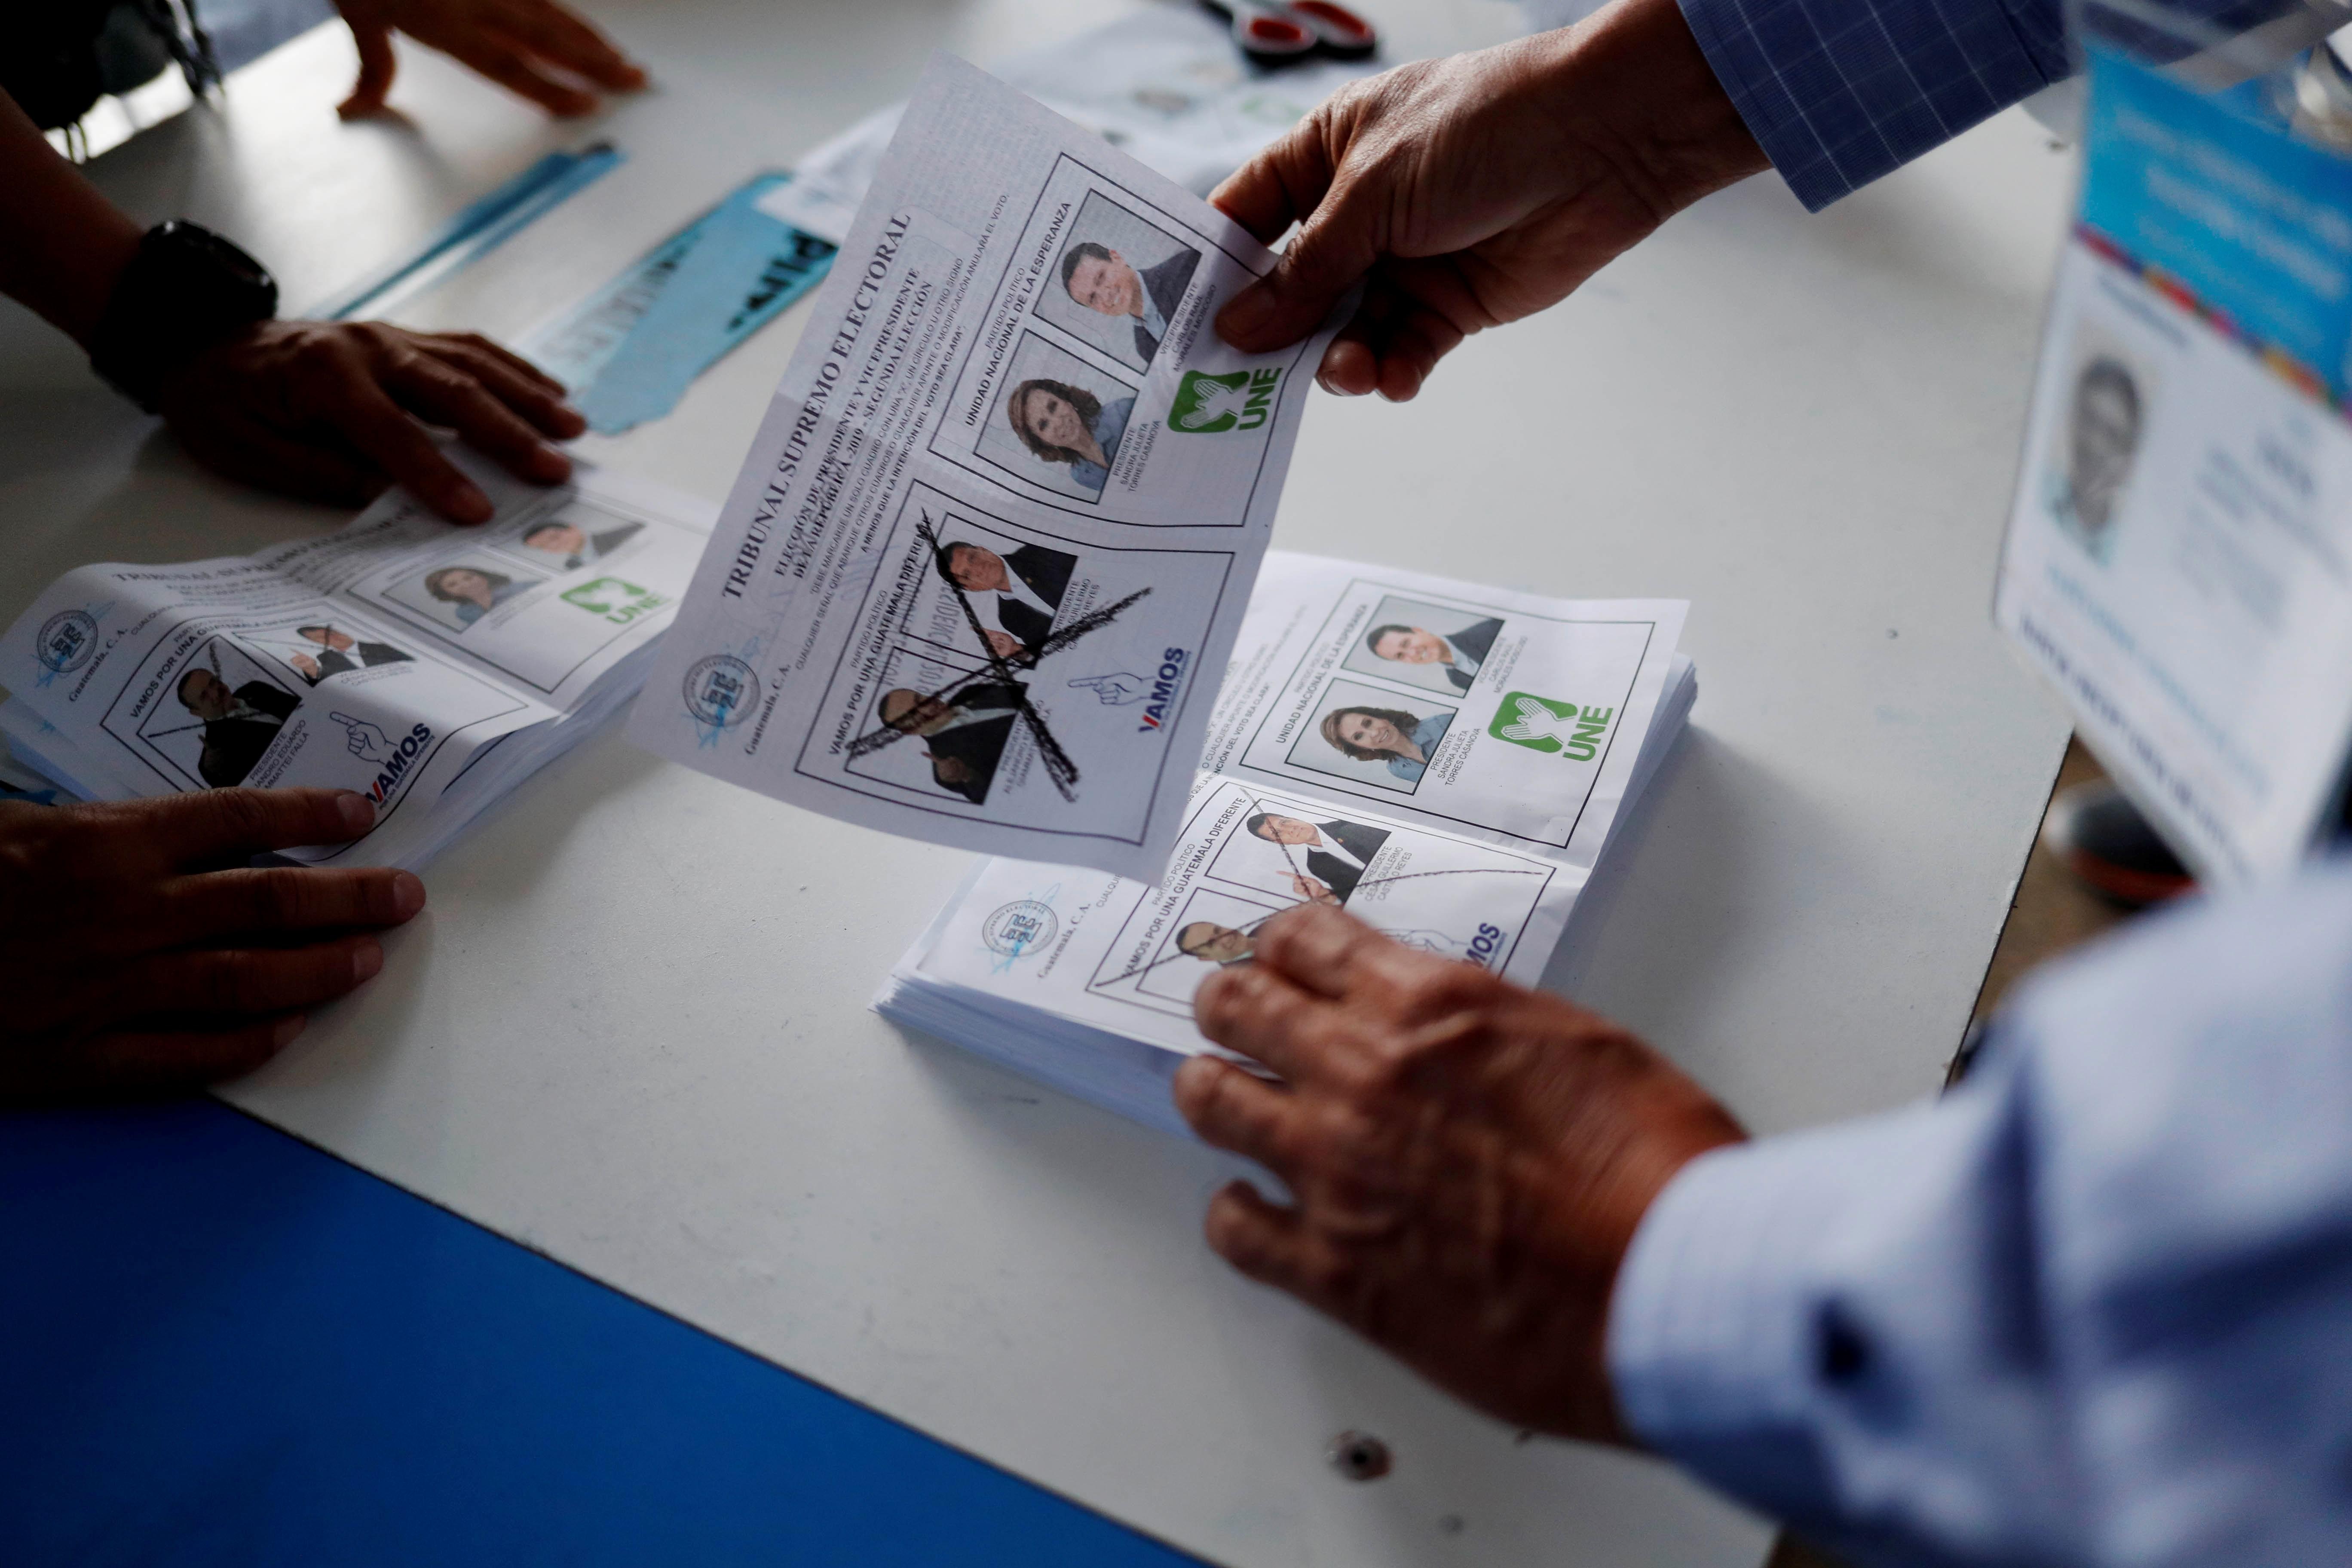 Según las misiones de observación, la jornada electoral del pasado domingo transcurrió sin mayores sobresaltos. (Foto Prensa Libre: EFE)